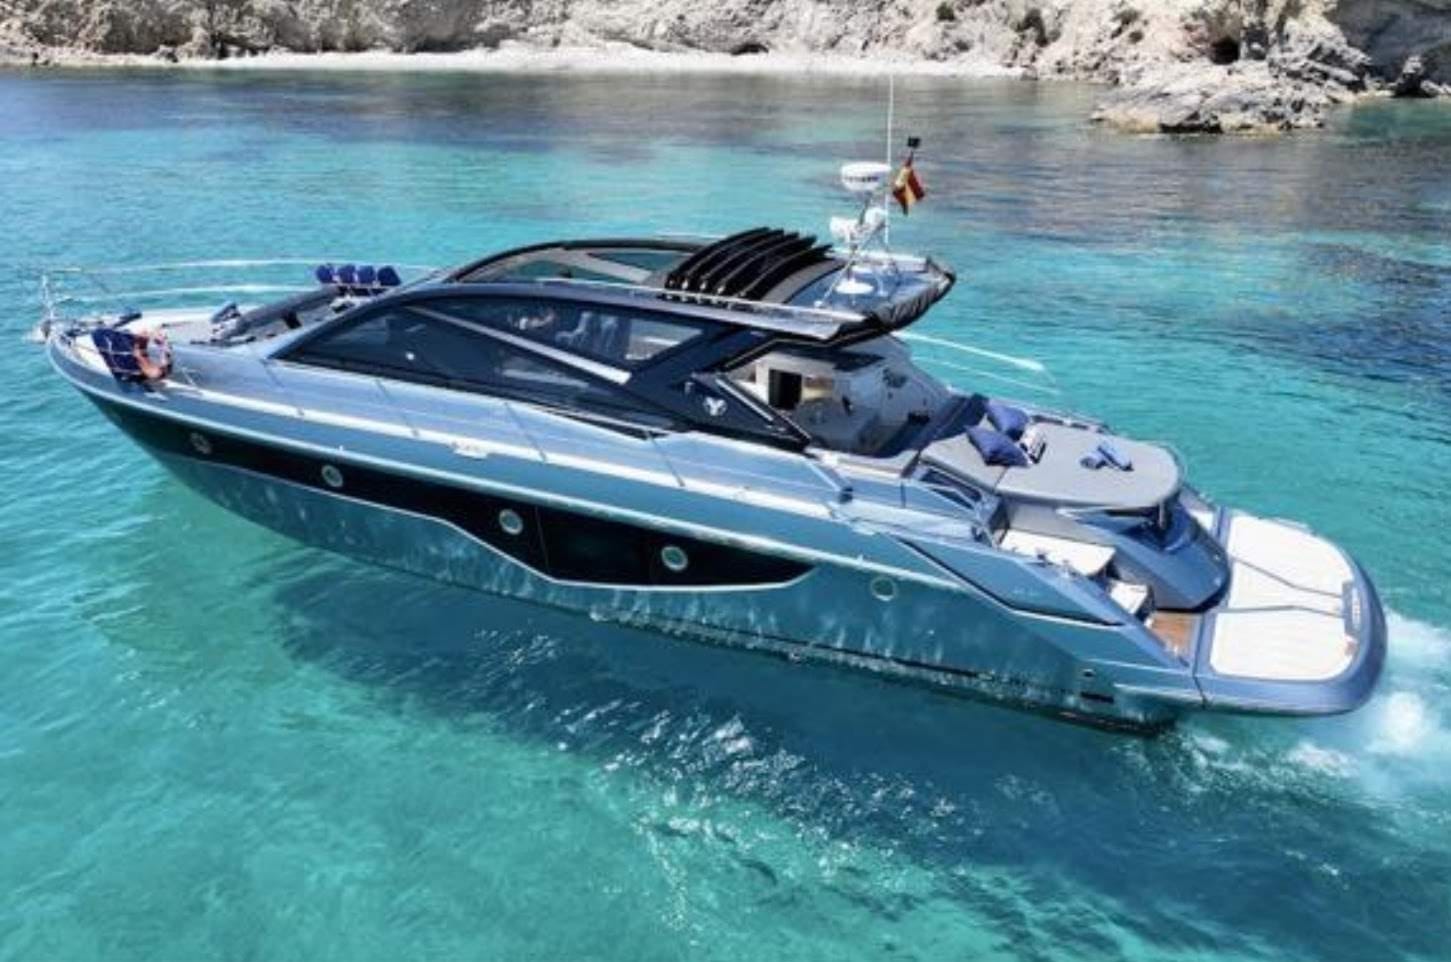 Barco de motor EN CHARTER, de la marca Cranchi modelo 60ST y del año 2018, disponible en Puerto Deportivo El Masnou El Masnou Barcelona España